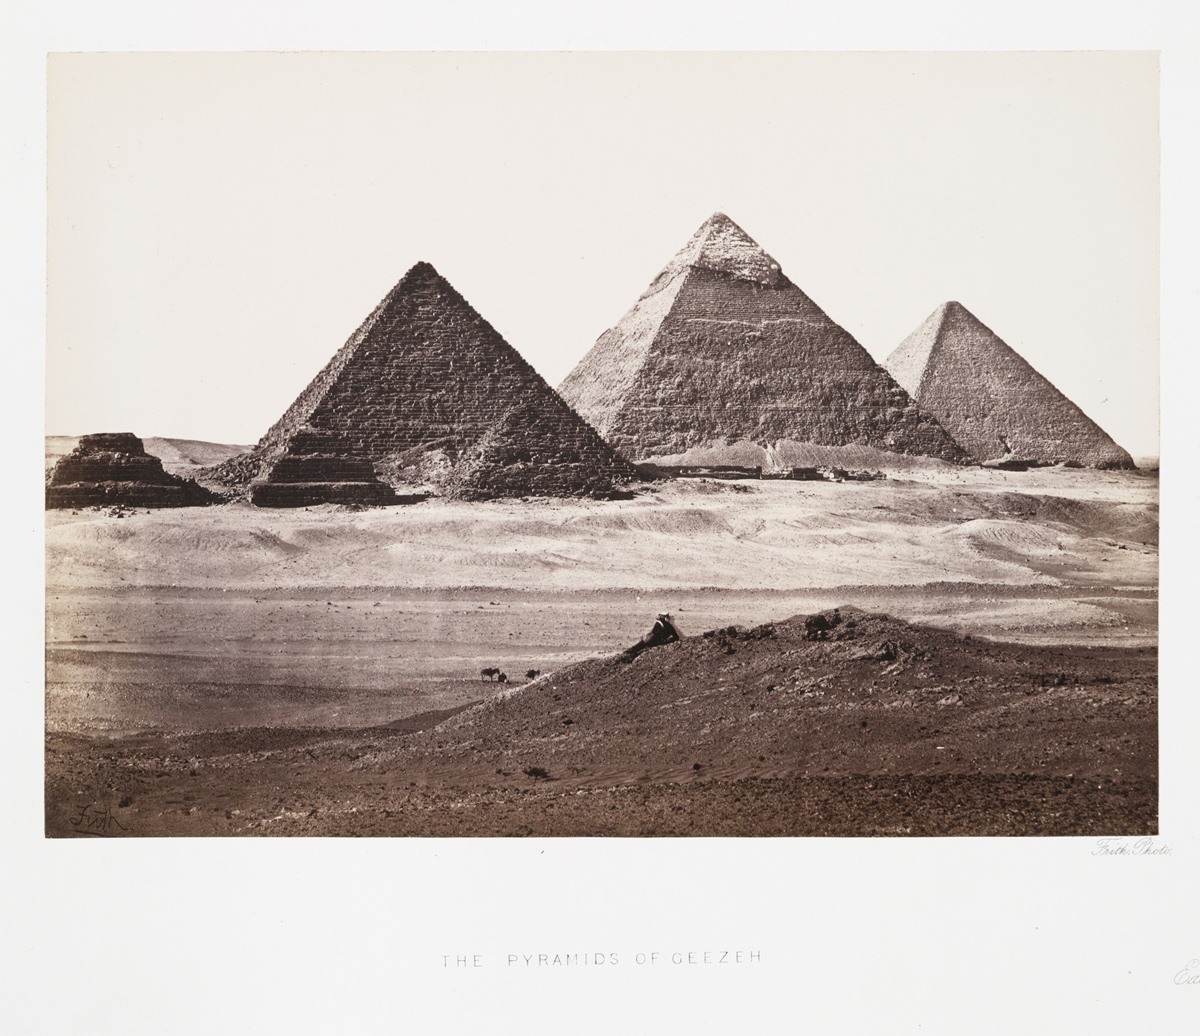 أهرامات الجيزة، في مصر، حوالي سنة 1863.